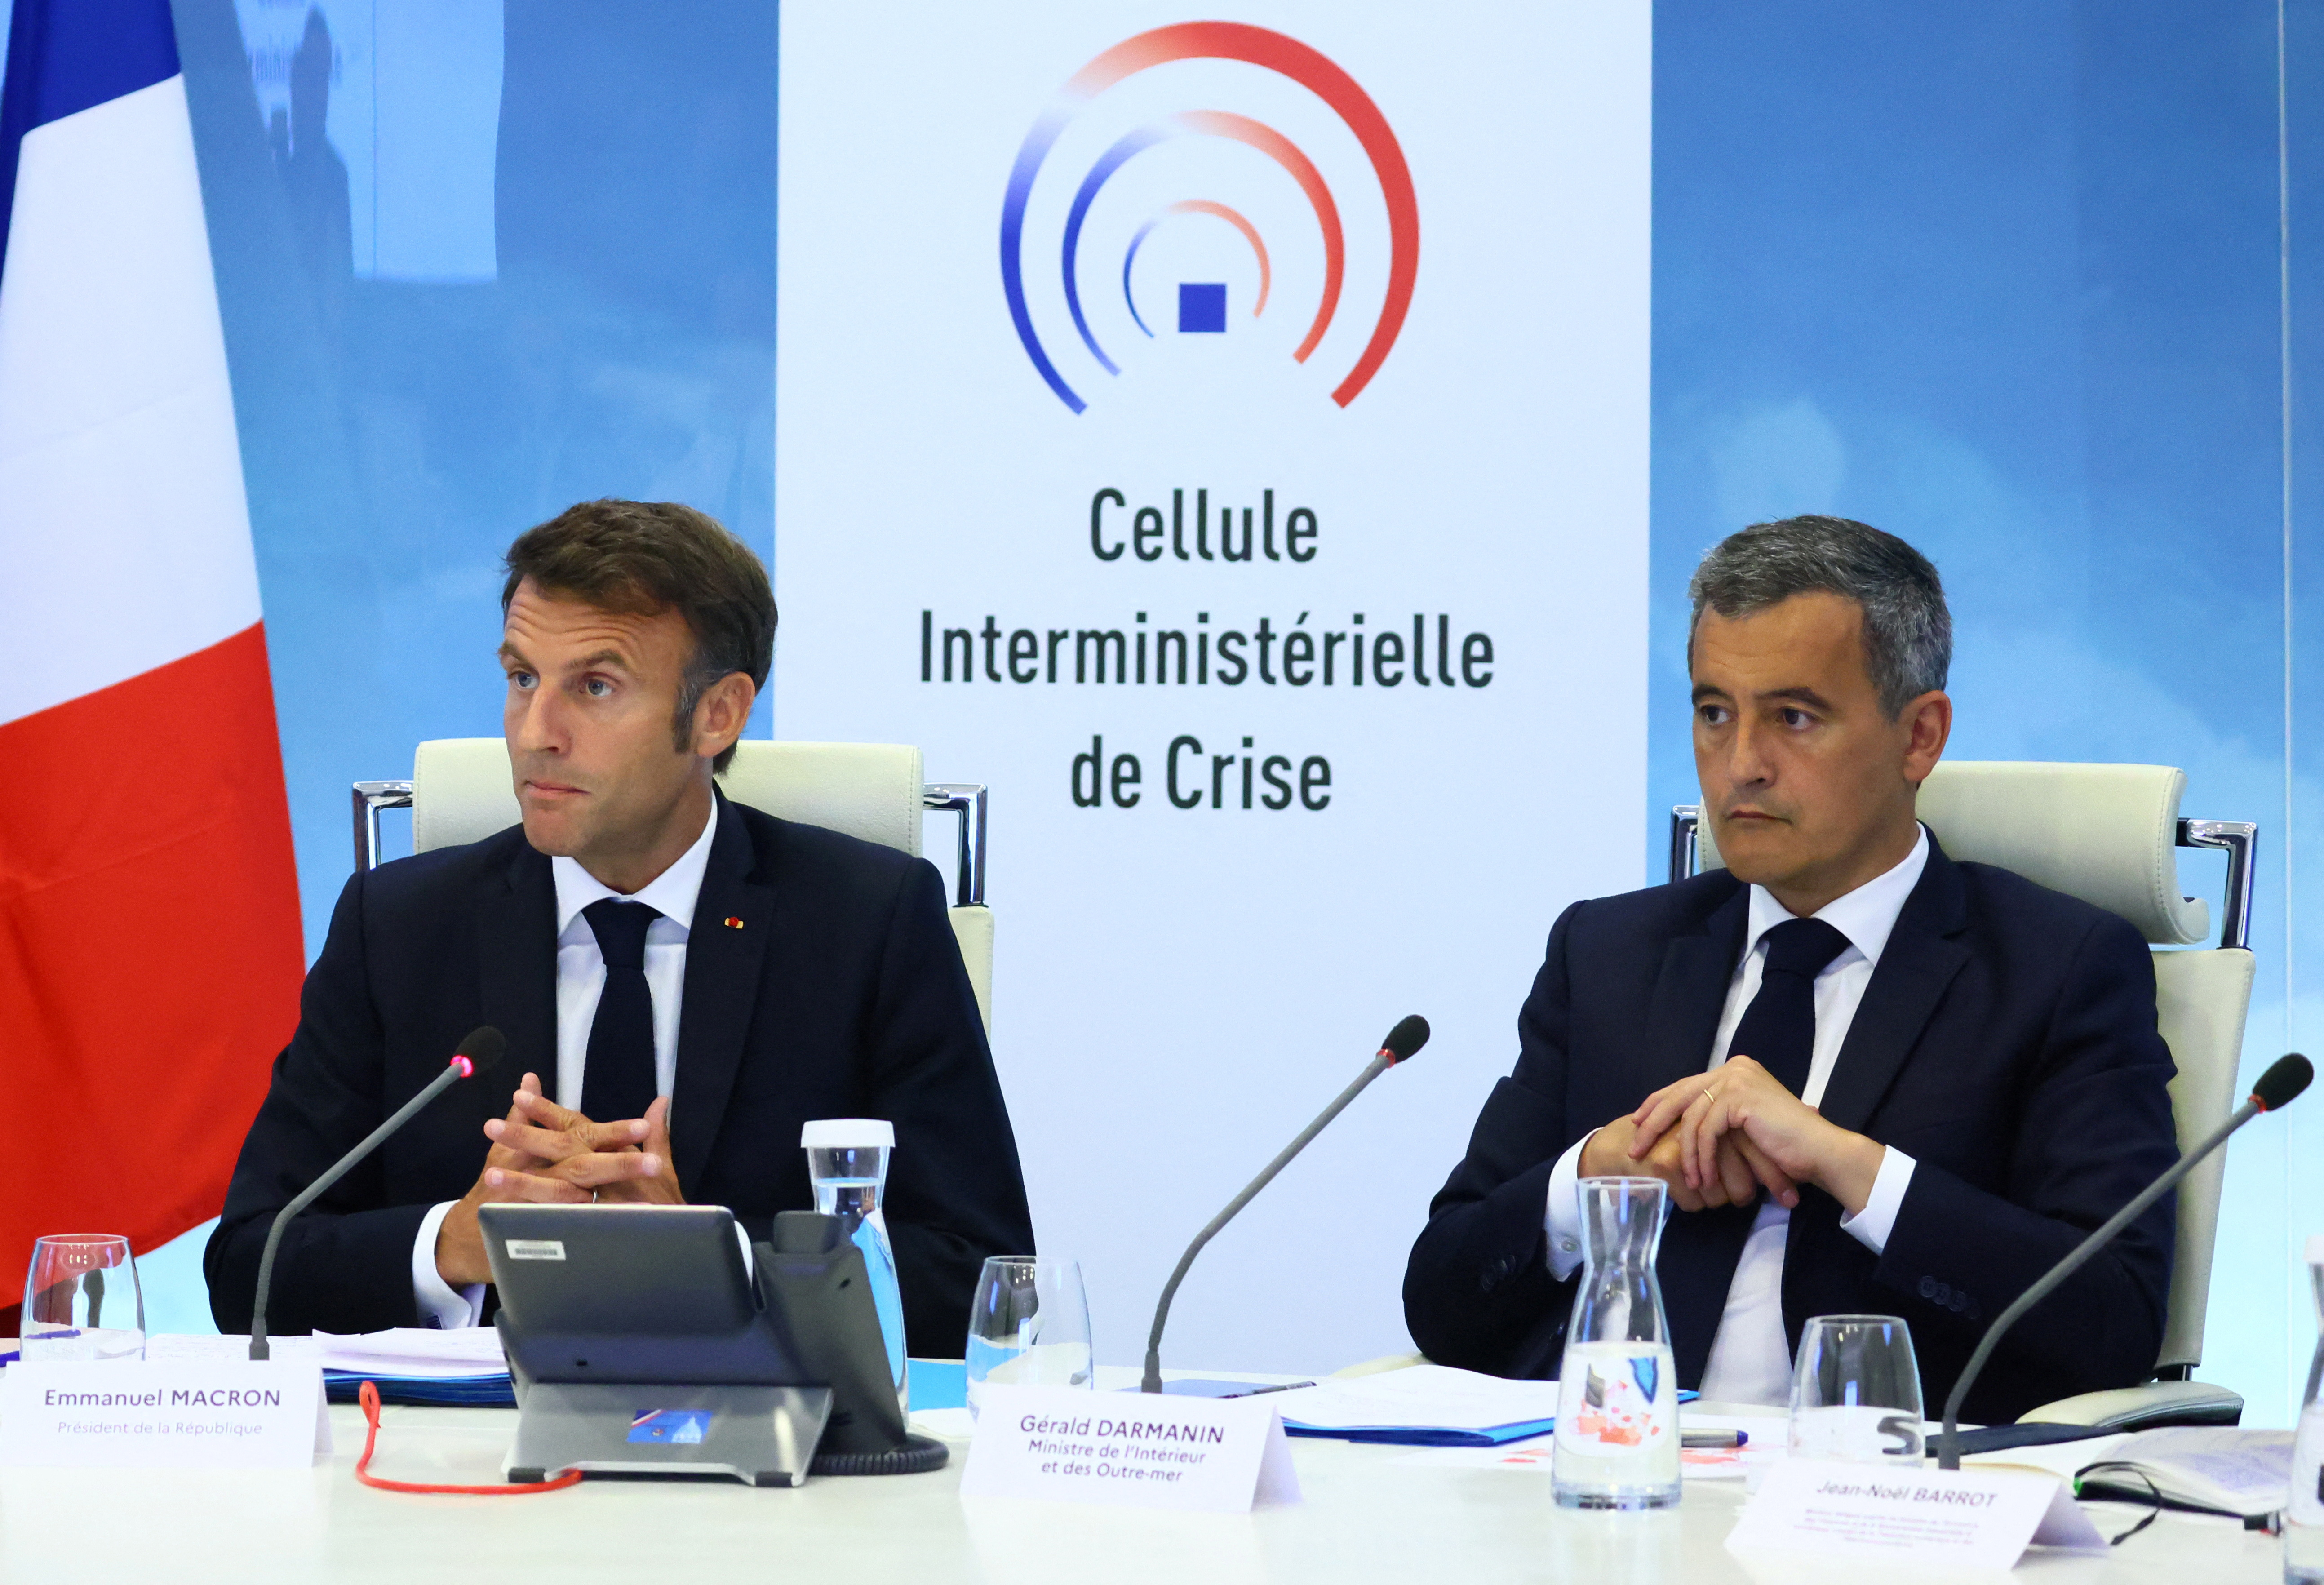 Crise des banlieues : Emmanuel Macron renvoie la balle aux élus locaux